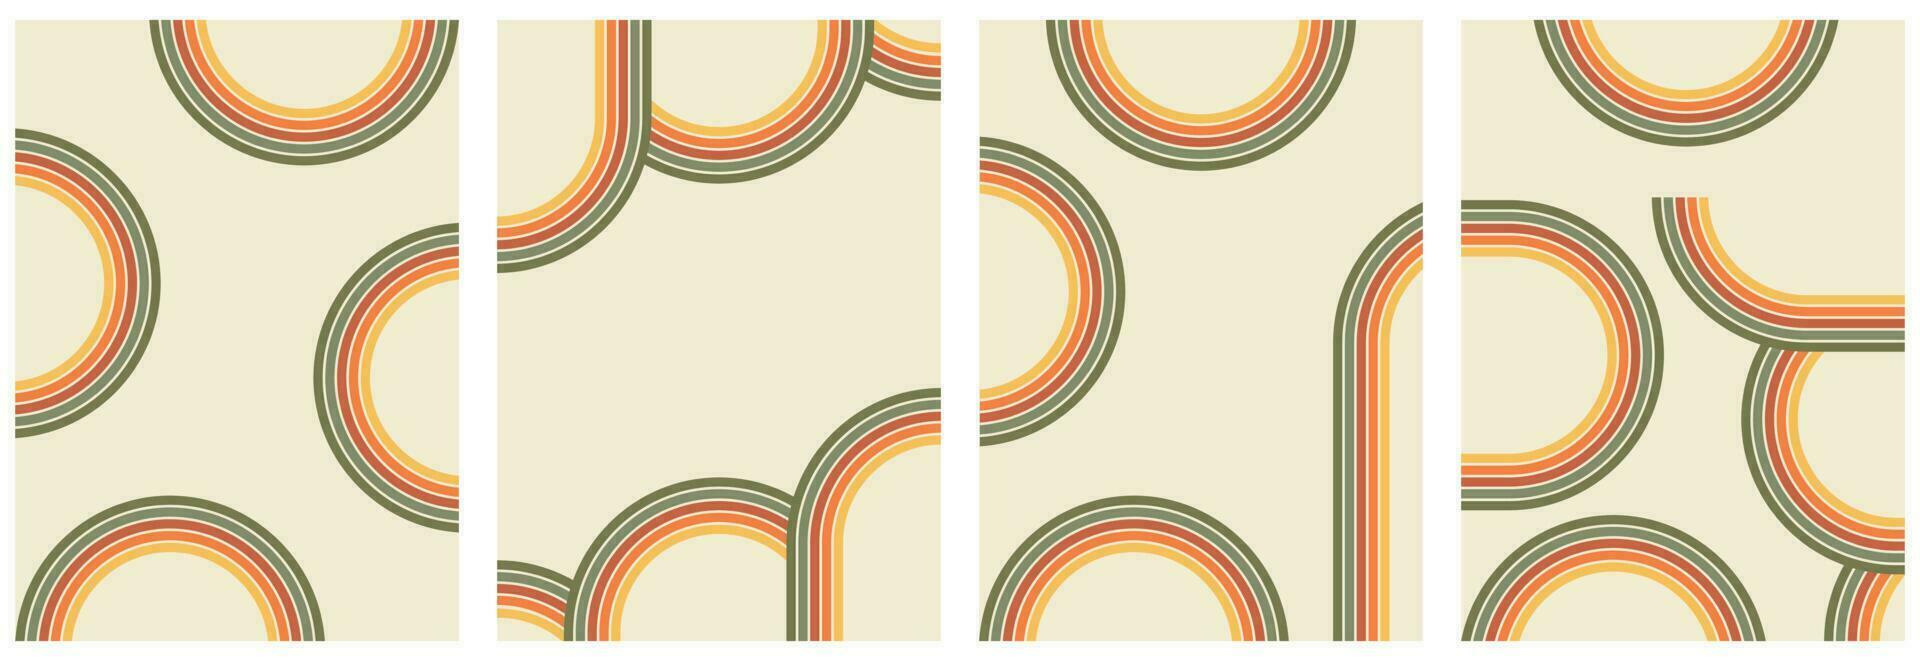 groovig Regenbogen Hintergründe, Plakate im das Stil von Wellen, wirbelt, wirbelnd Muster, Labyrinth. modisch retro-psychedelisch Stil von Hippie Ästhetik von das 70er. vektor